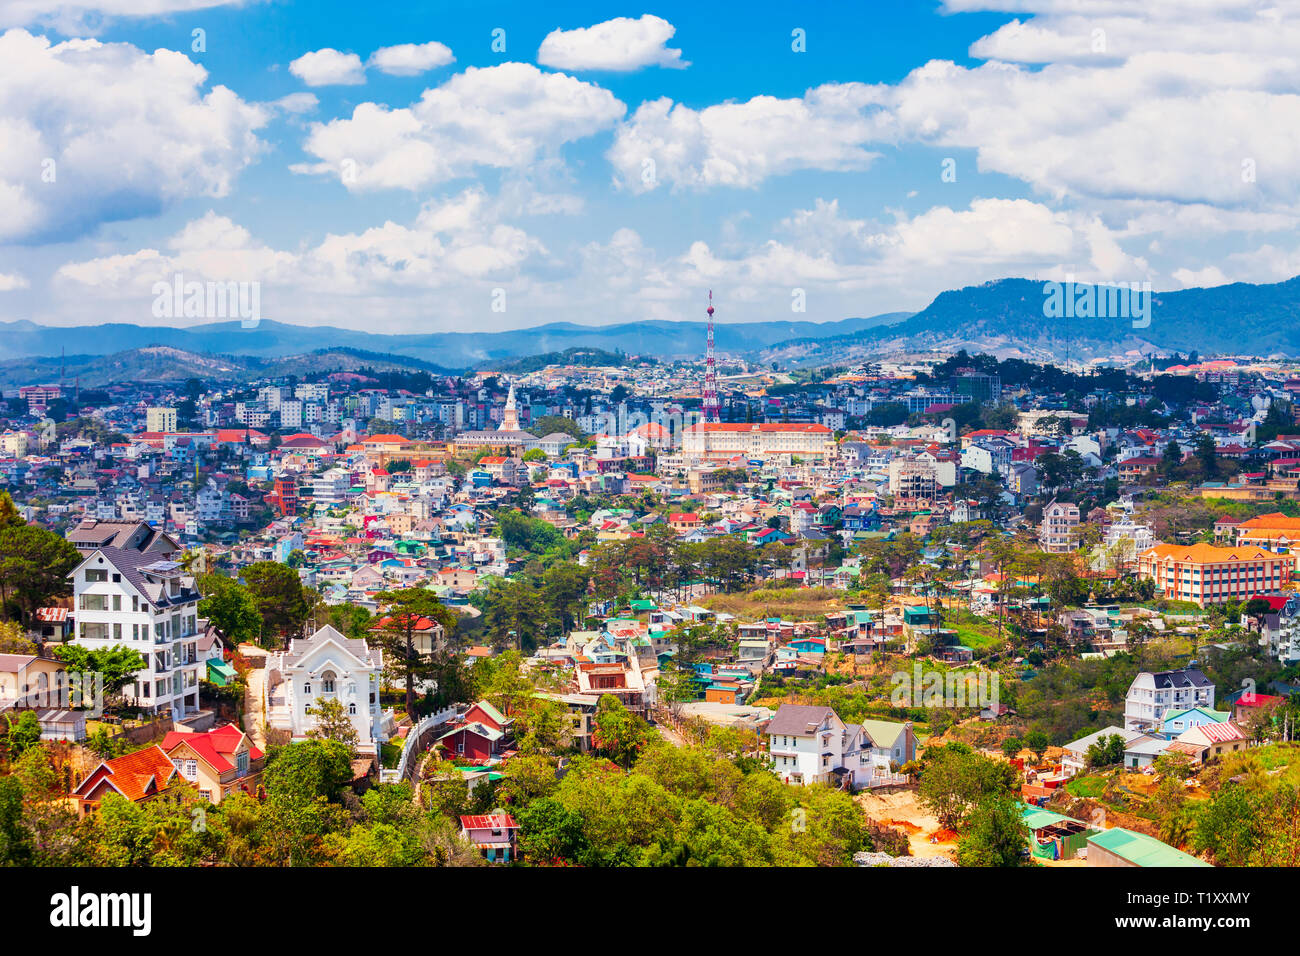 Dalat or Da Lat city aerial panoramic view in Vietnam Stock Photo